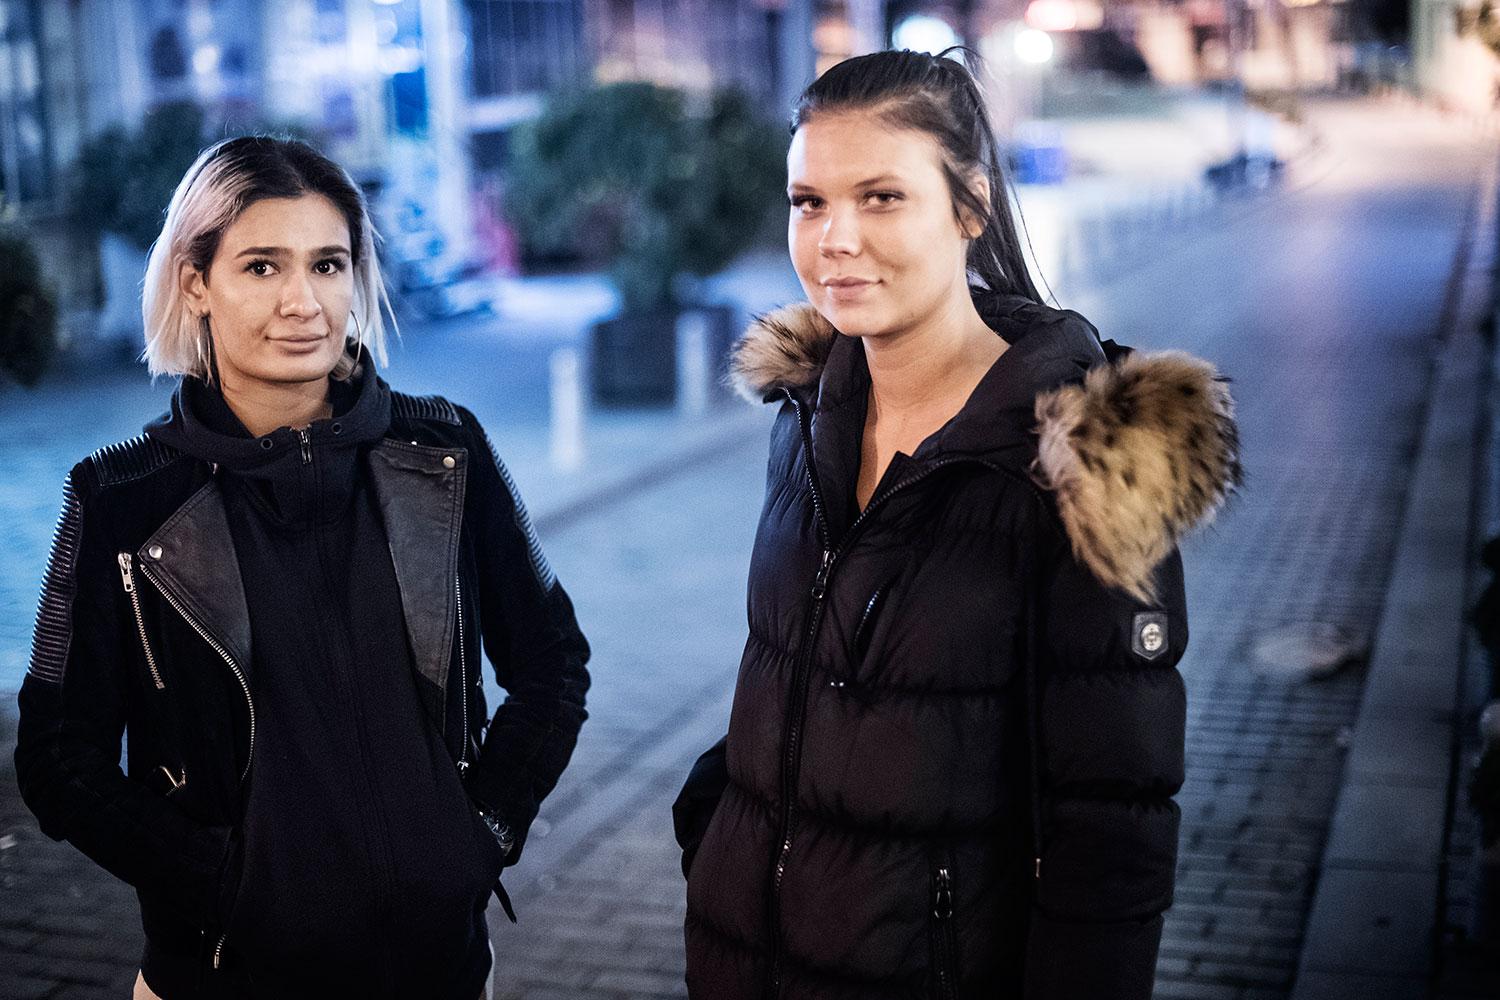 Isabella Pelin Sevgili, 21 och Moa Larsson, 18, befann sig i kön till Reina kort före attacken.